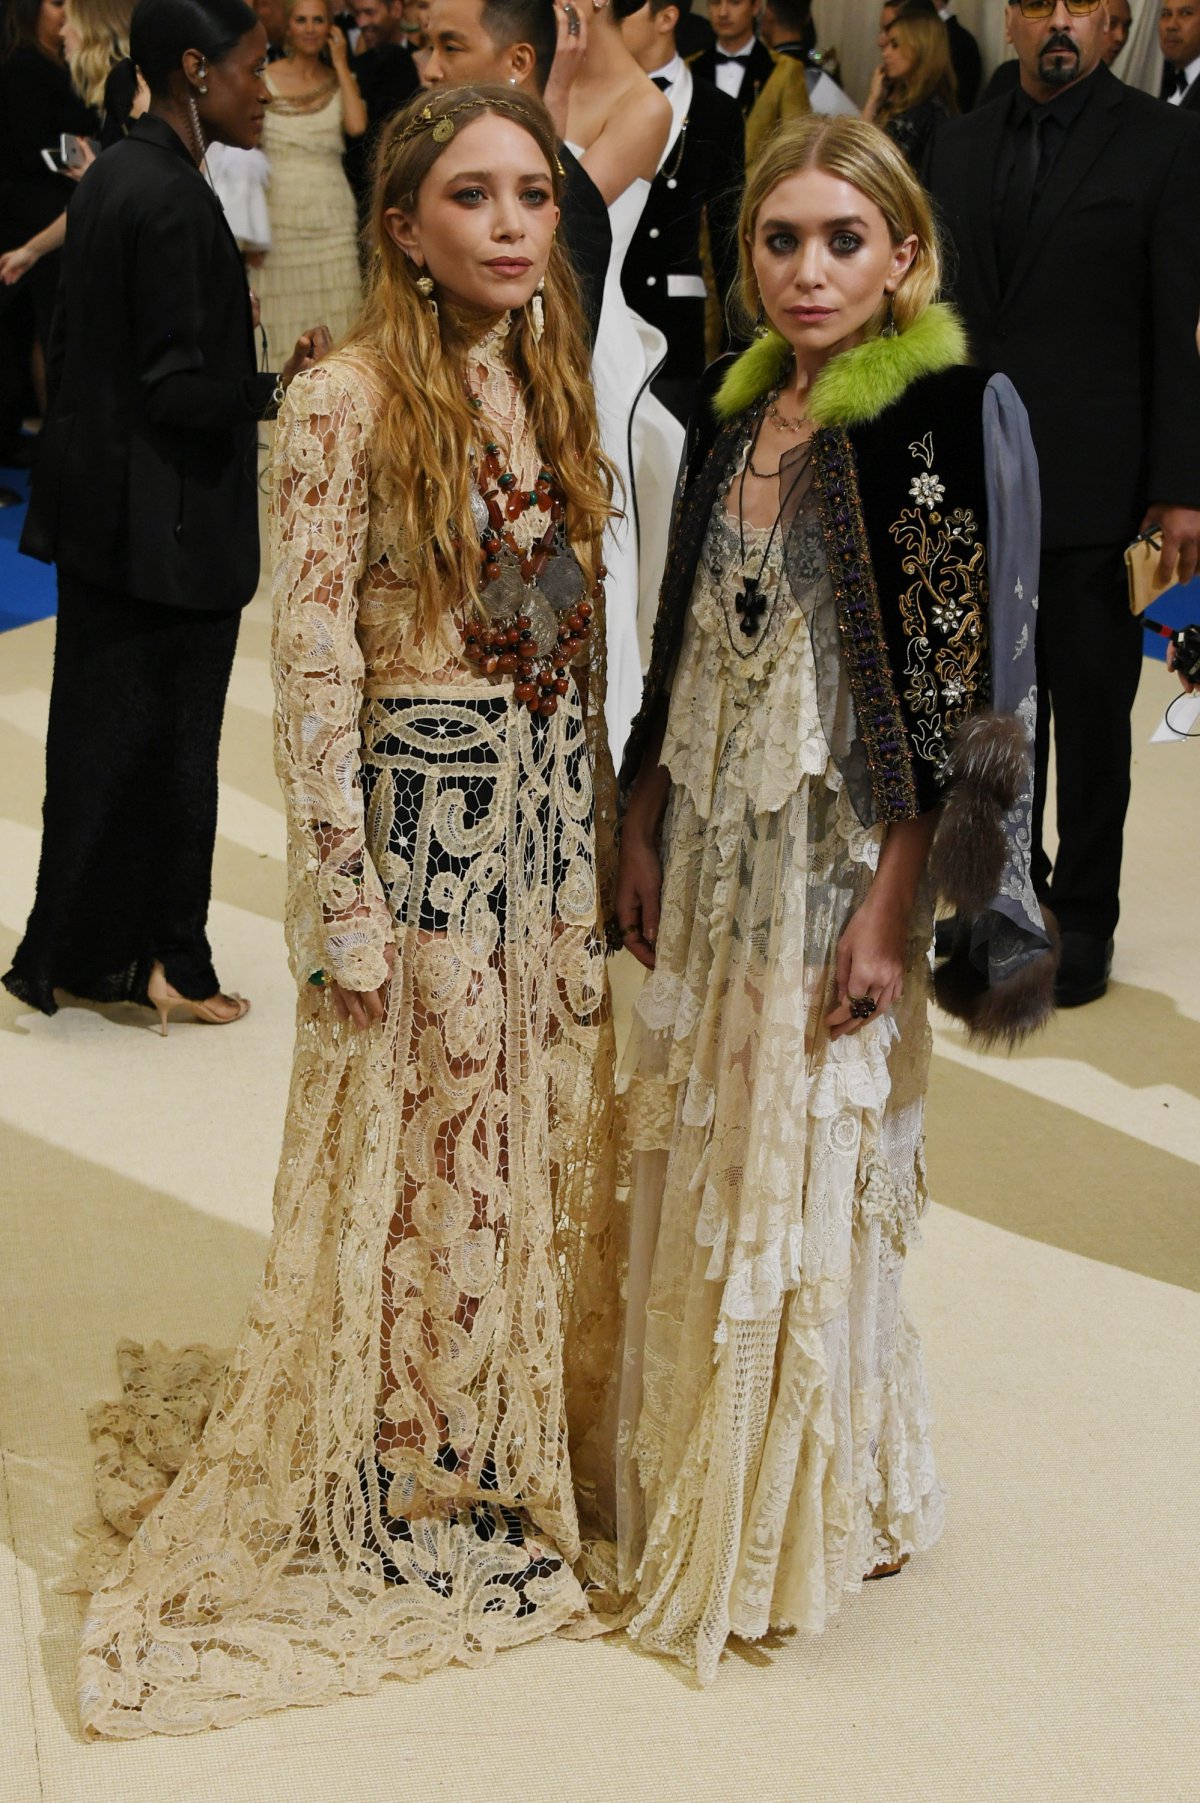 Mary Kate y Ashley Olsen: Treinta años siendo iconos de estilo